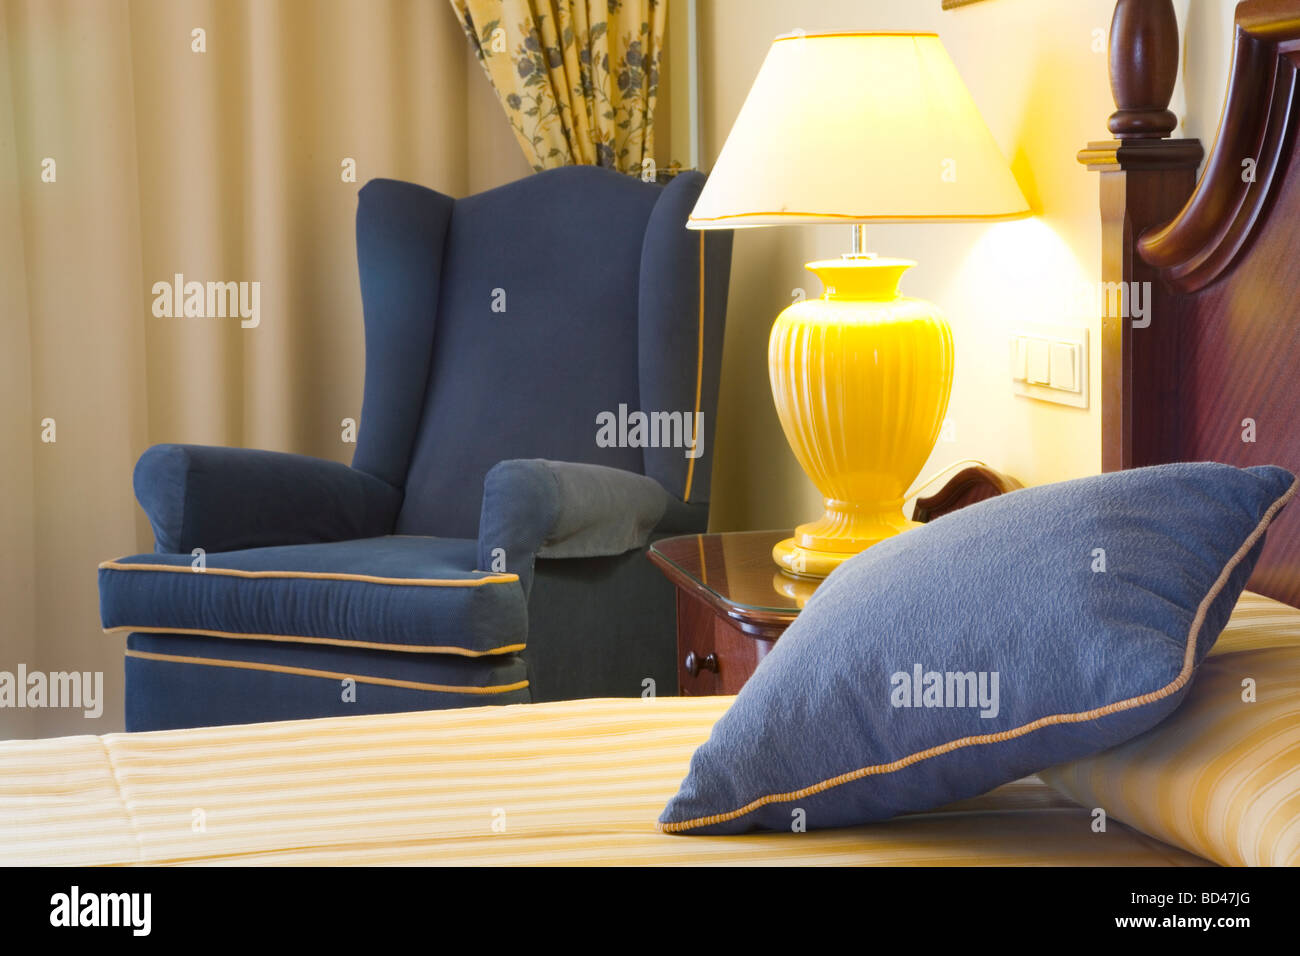 Détail d'un hôtel de luxe chambre avec lit, chaise et lampe de chevet Banque D'Images